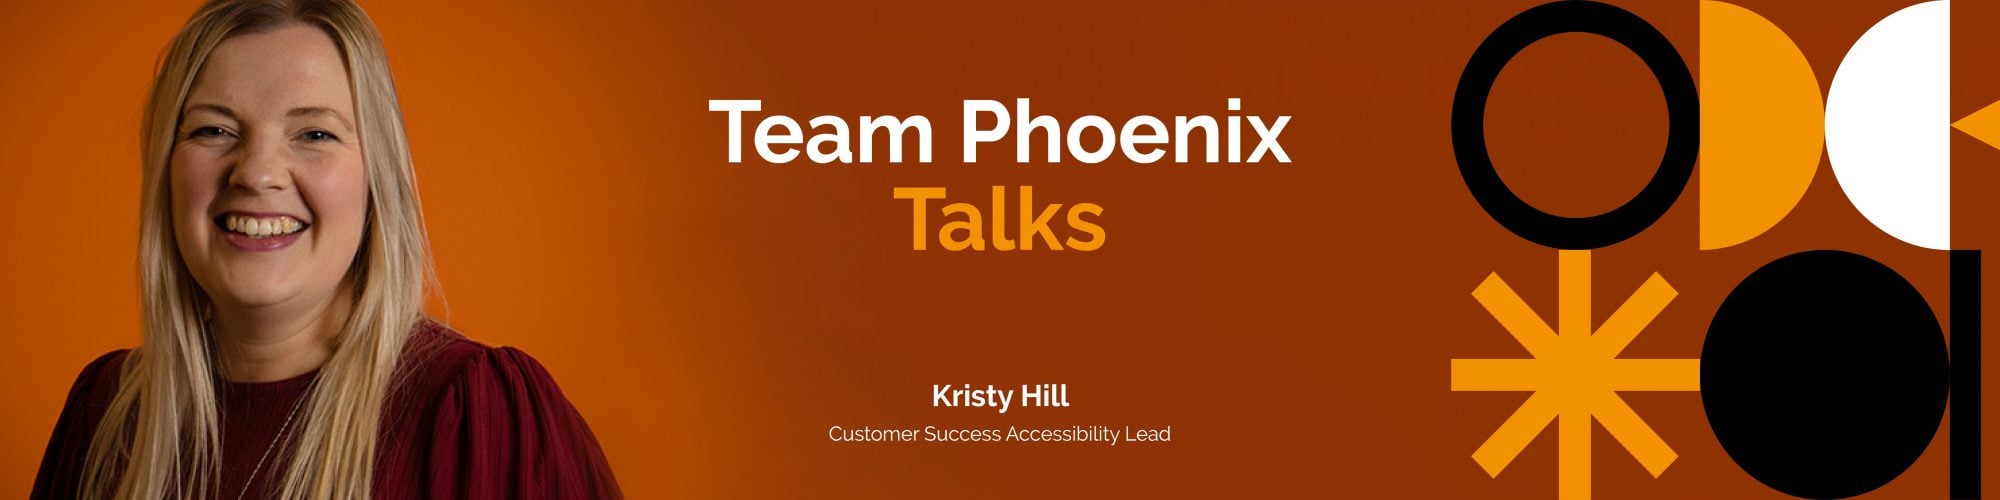 Team Phoenix Talks: Kristy Hill